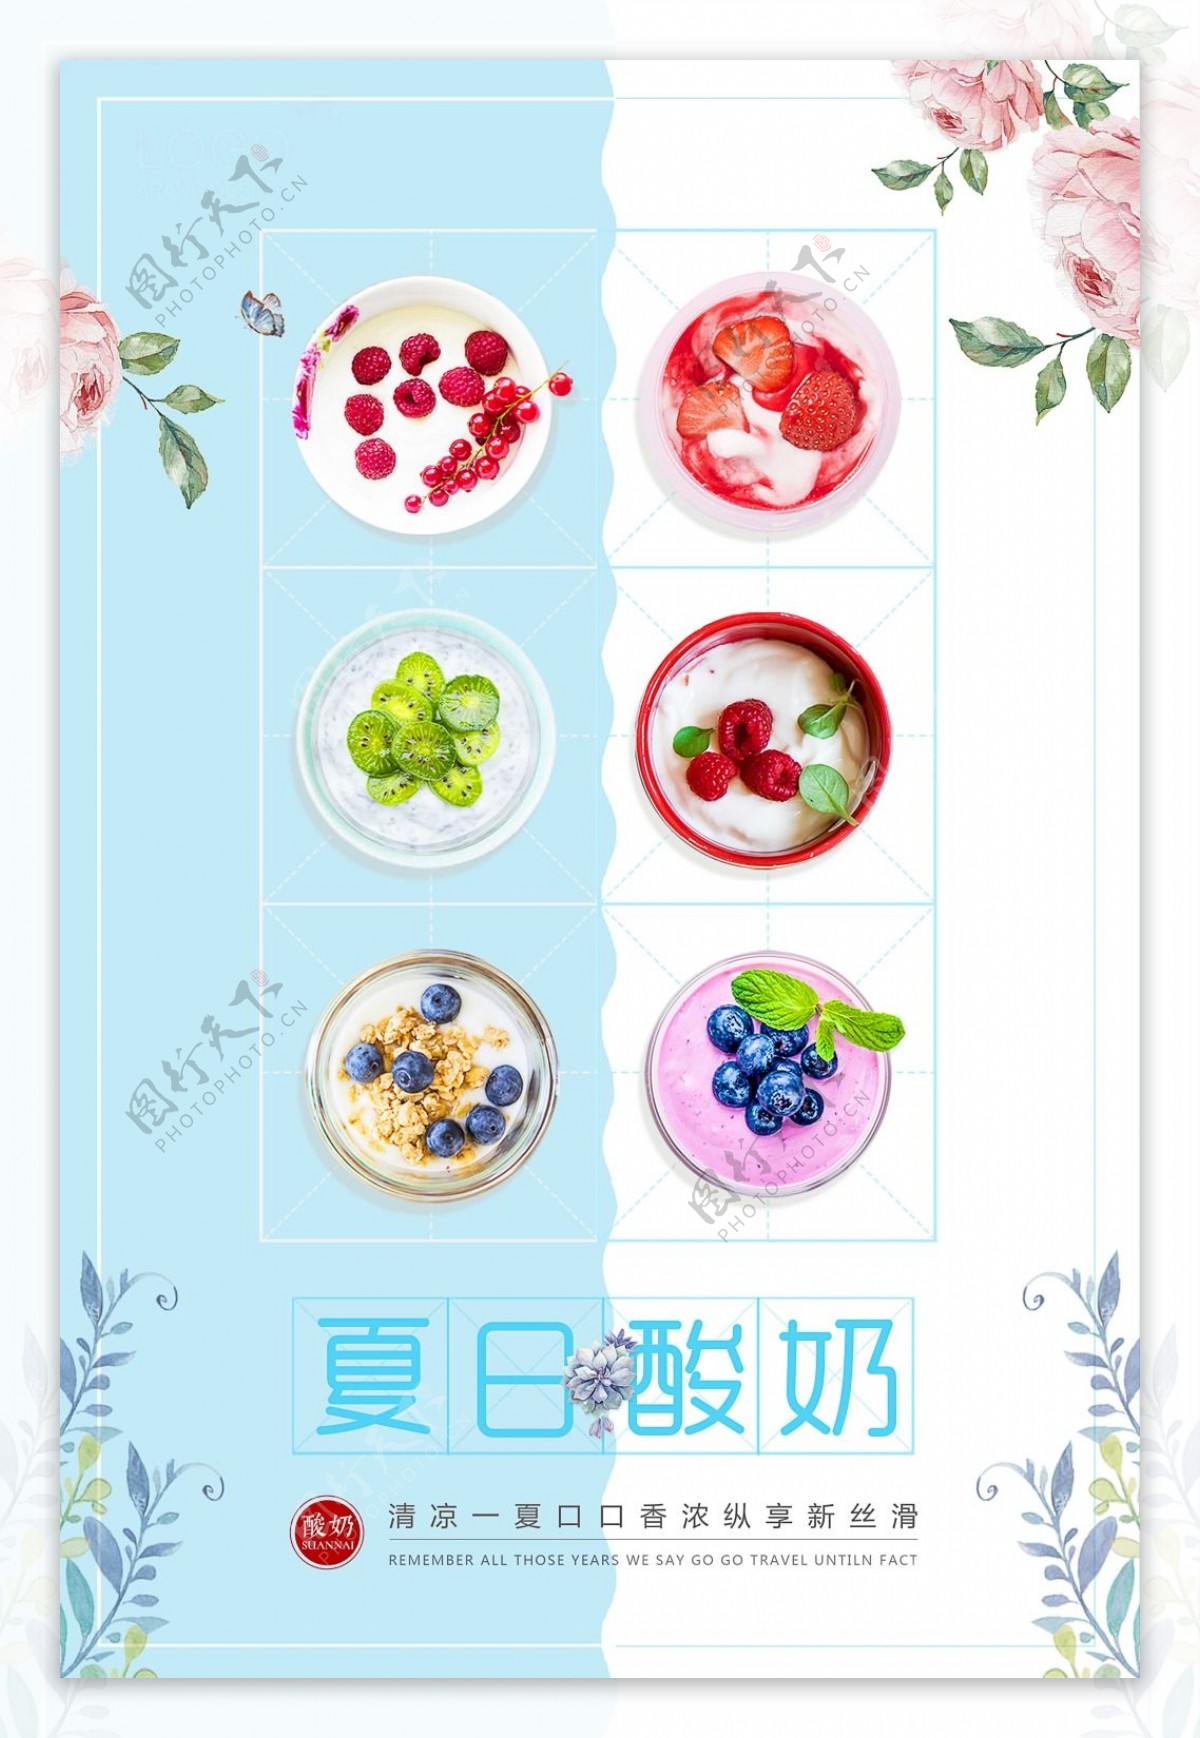 清新创意夏日清凉特色风味水果酸奶促销海报